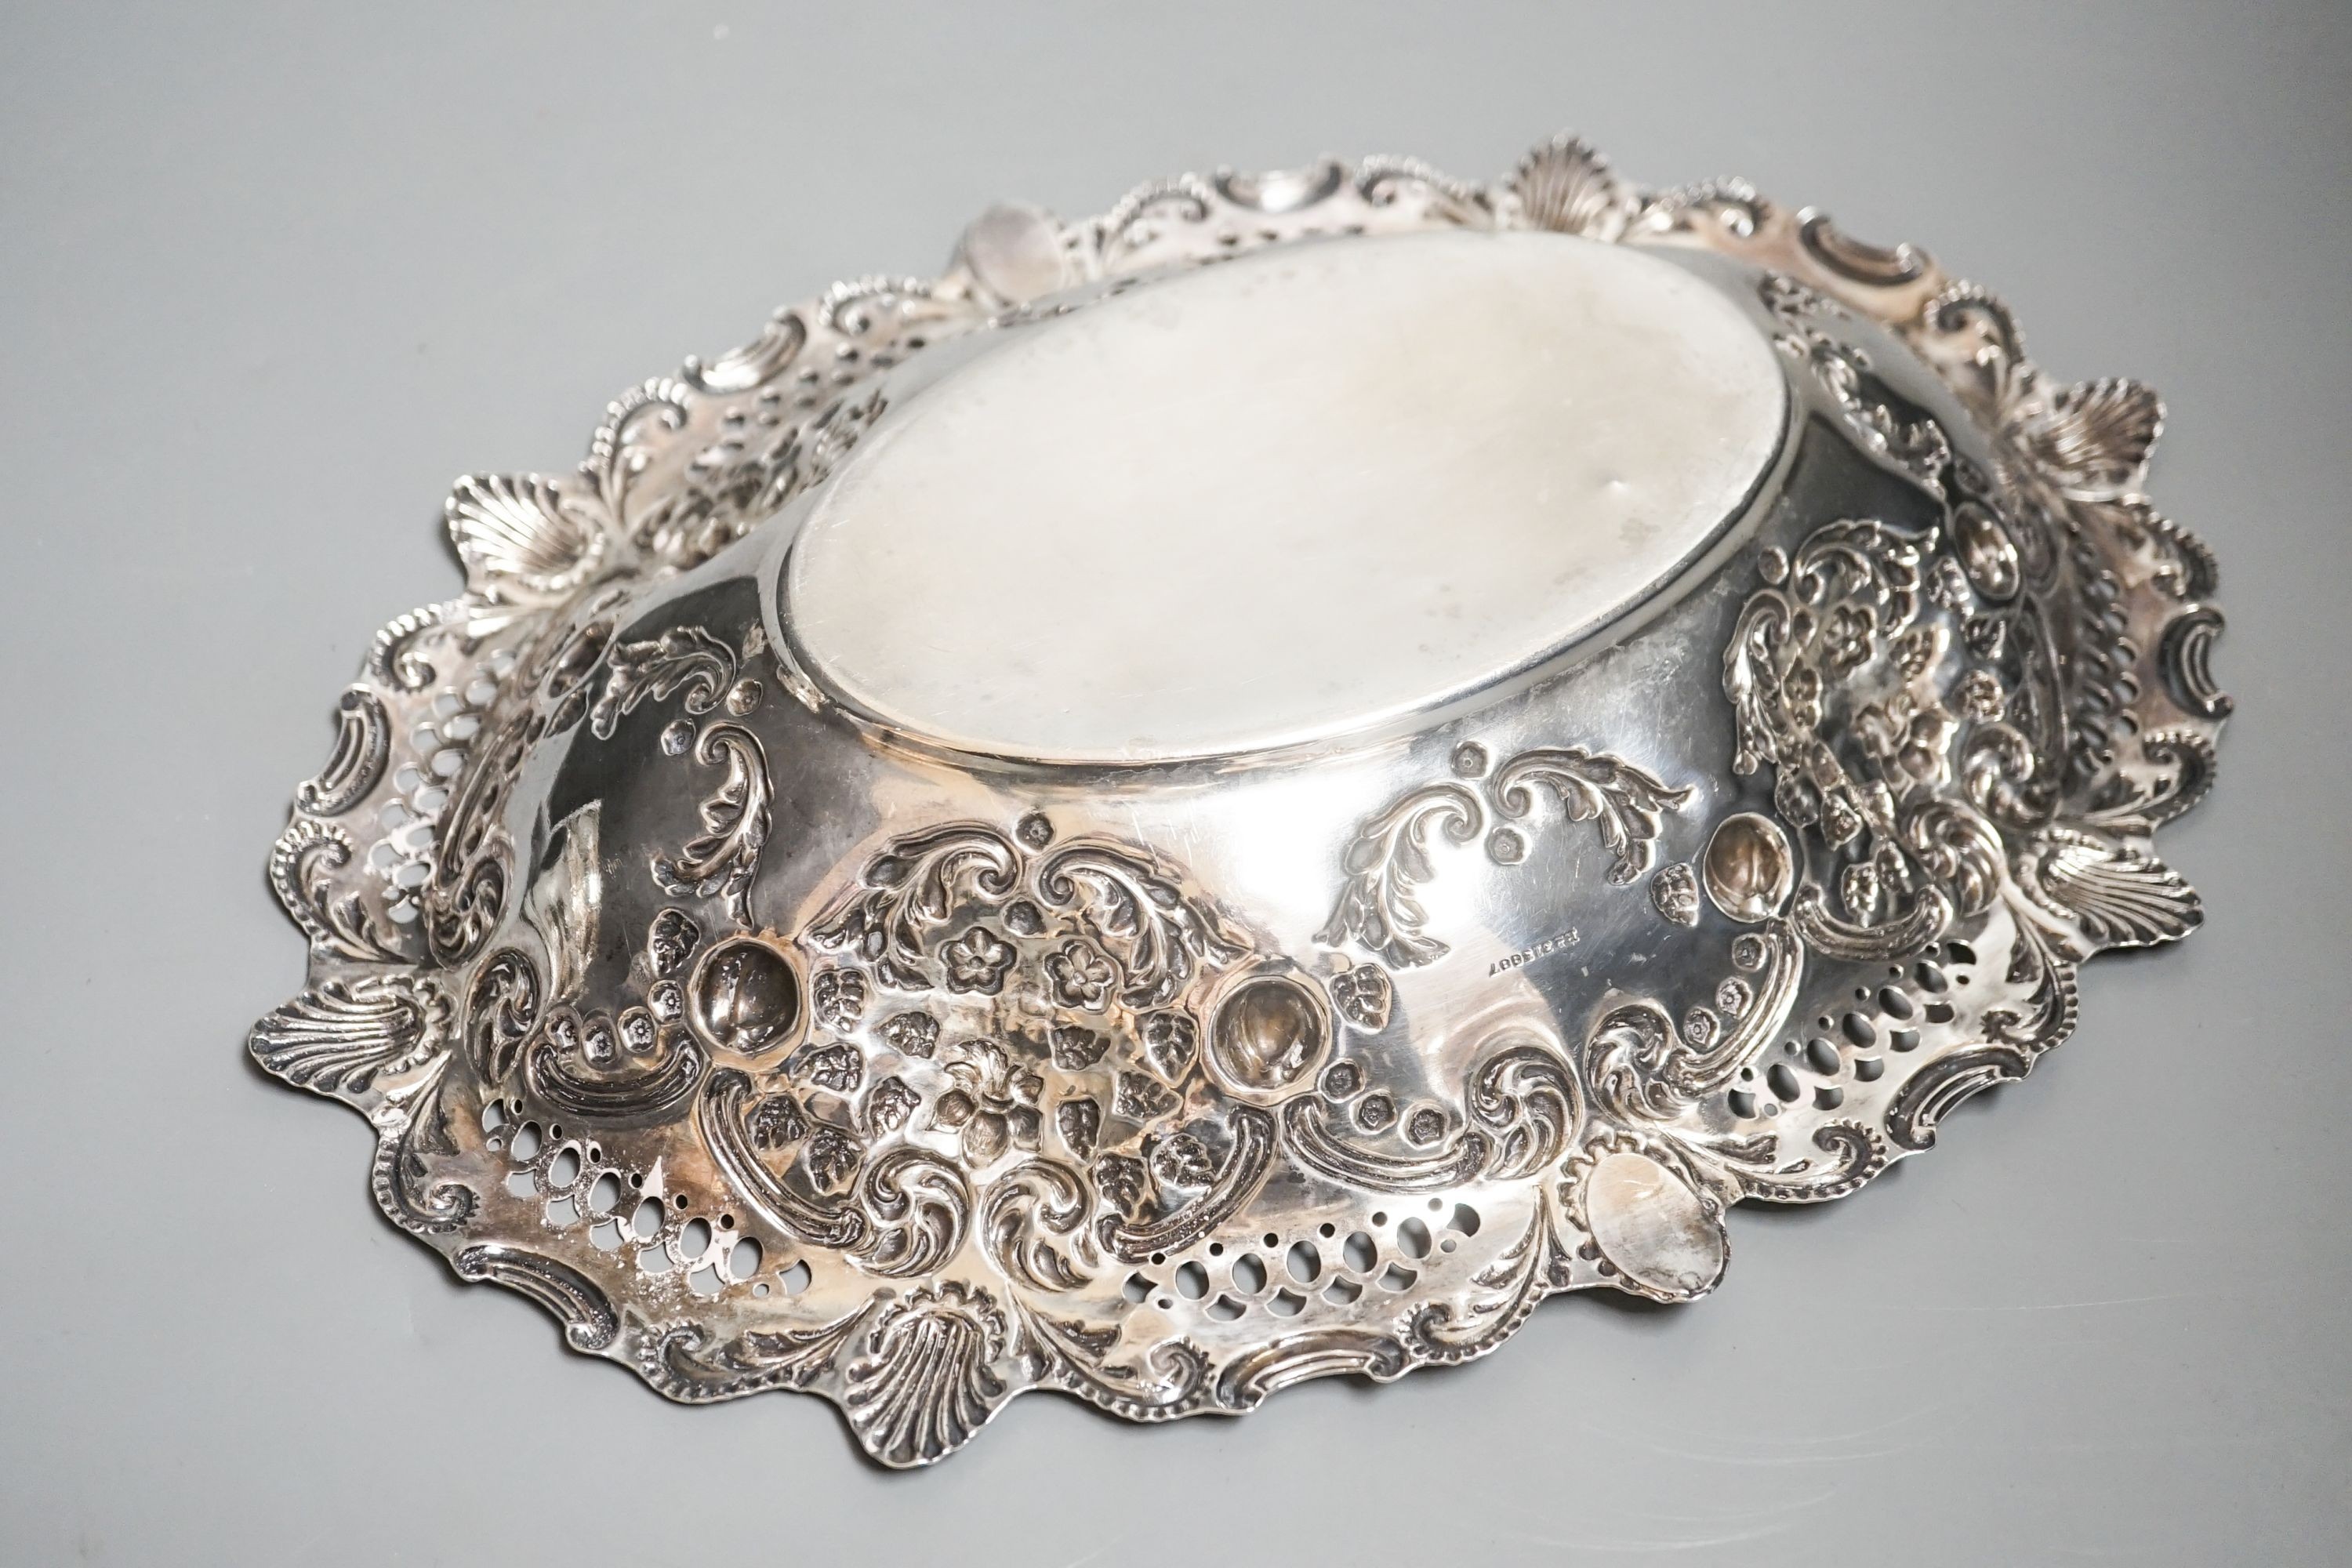 An Edwardian pierced silver oval dish, Birmingham, 1904, 30.8cm, 10.5oz.